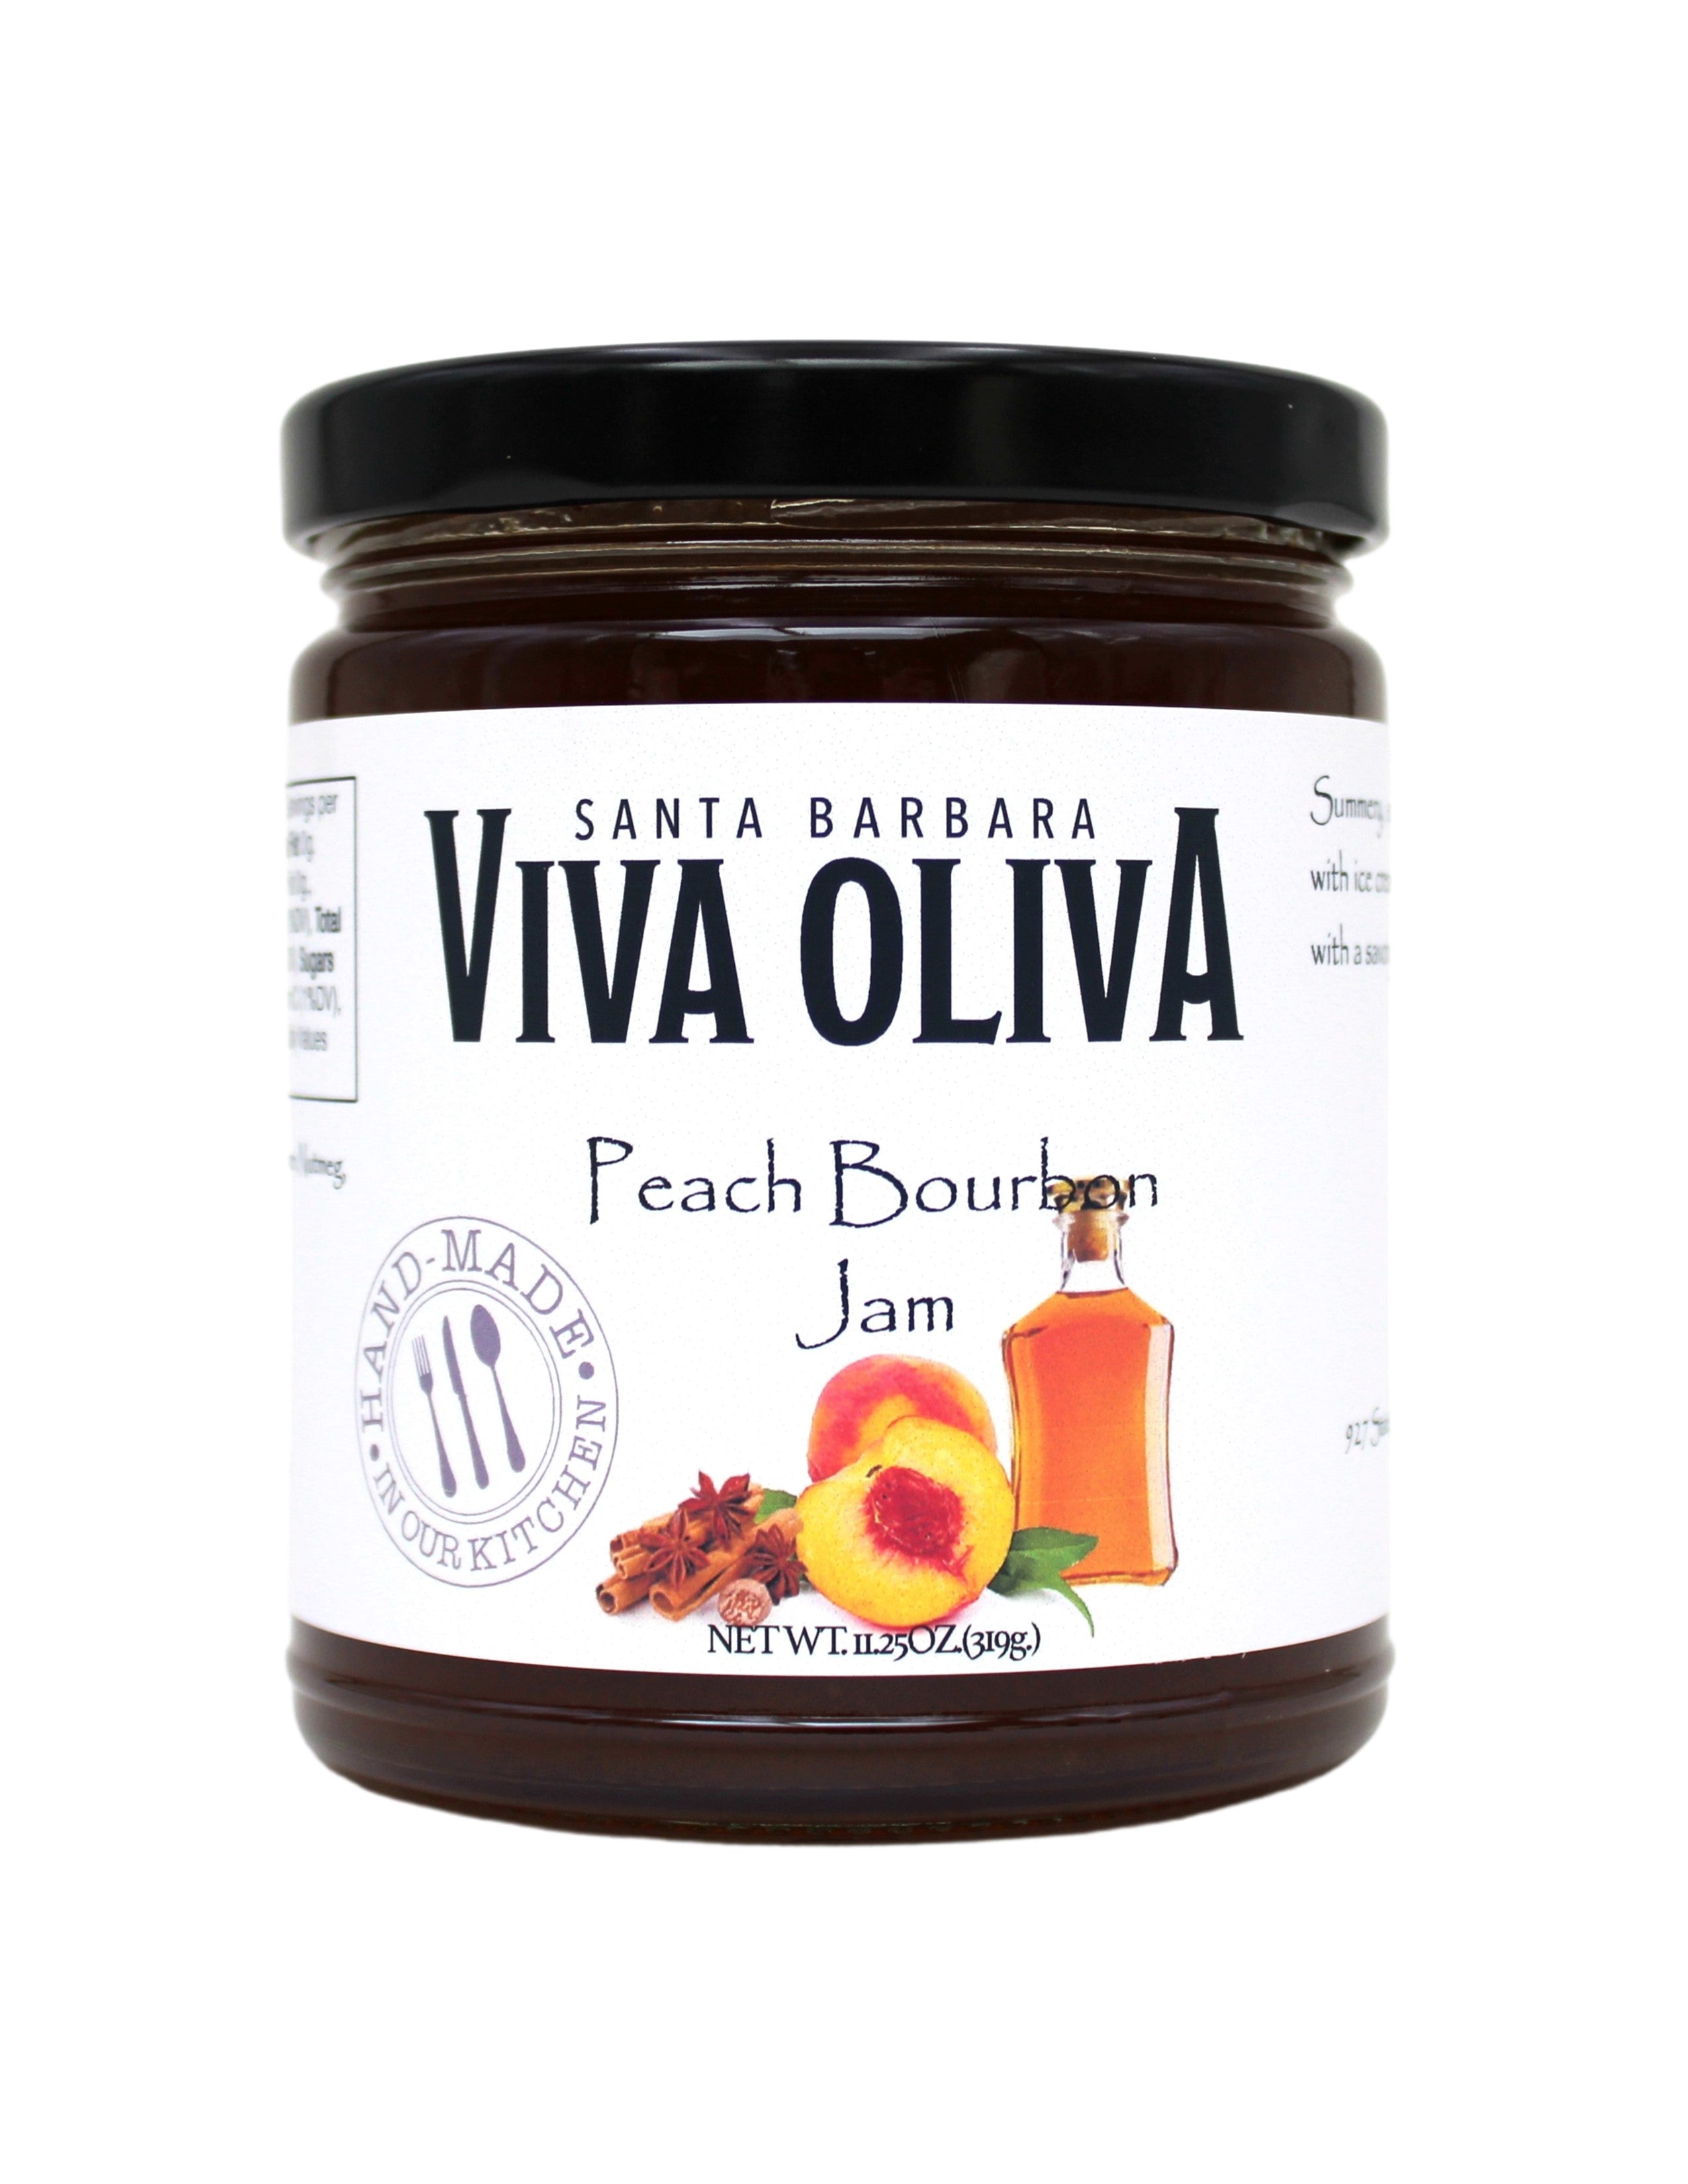 Roasted Walnut Oil - Viva Oliva